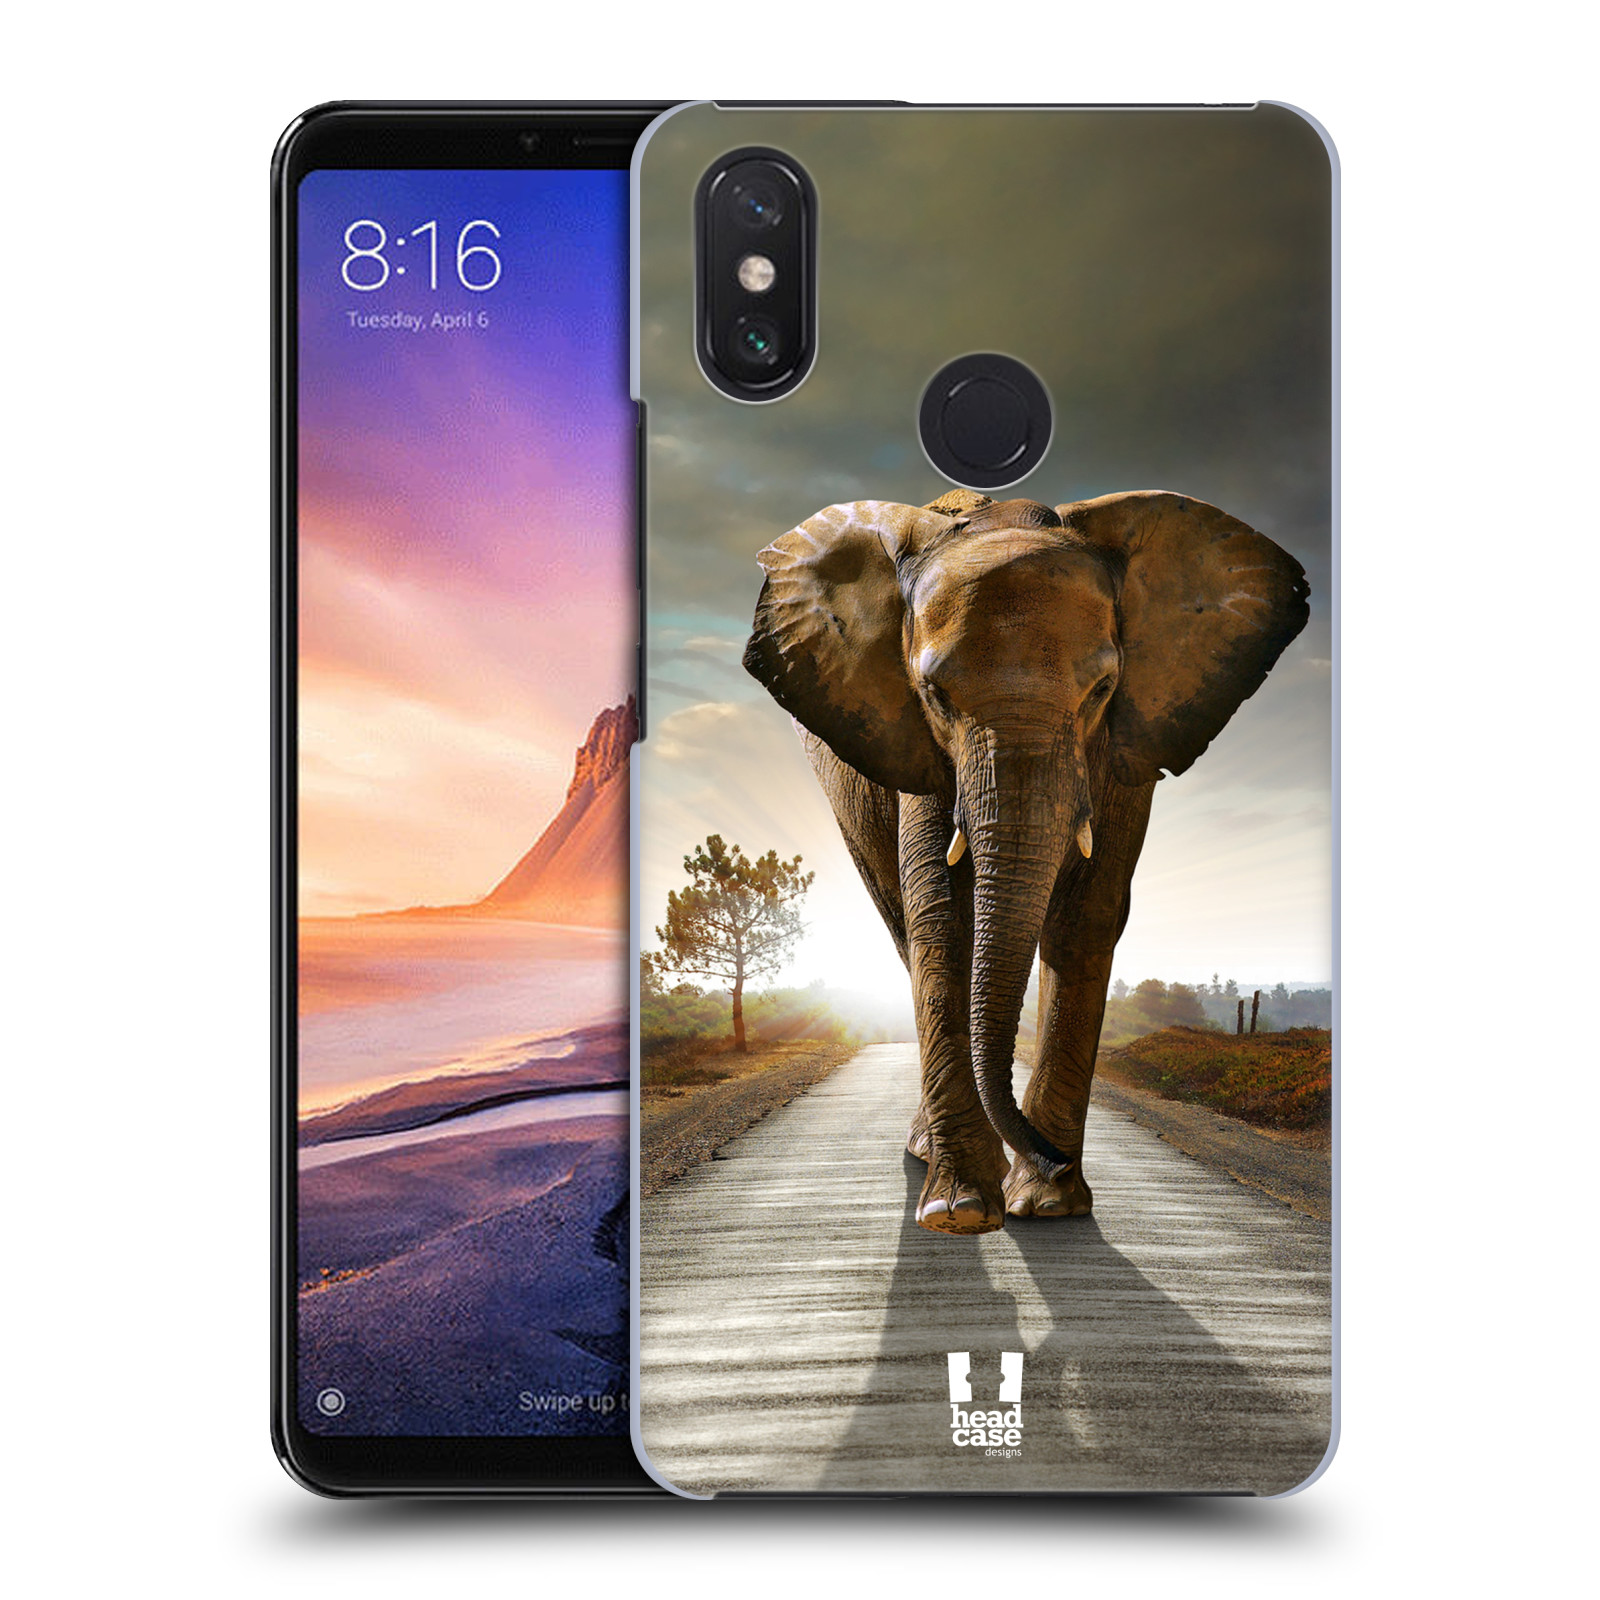 Zadní obal pro mobil Xiaomi Mi Max 3 - HEAD CASE - Svět zvířat kráčející slon